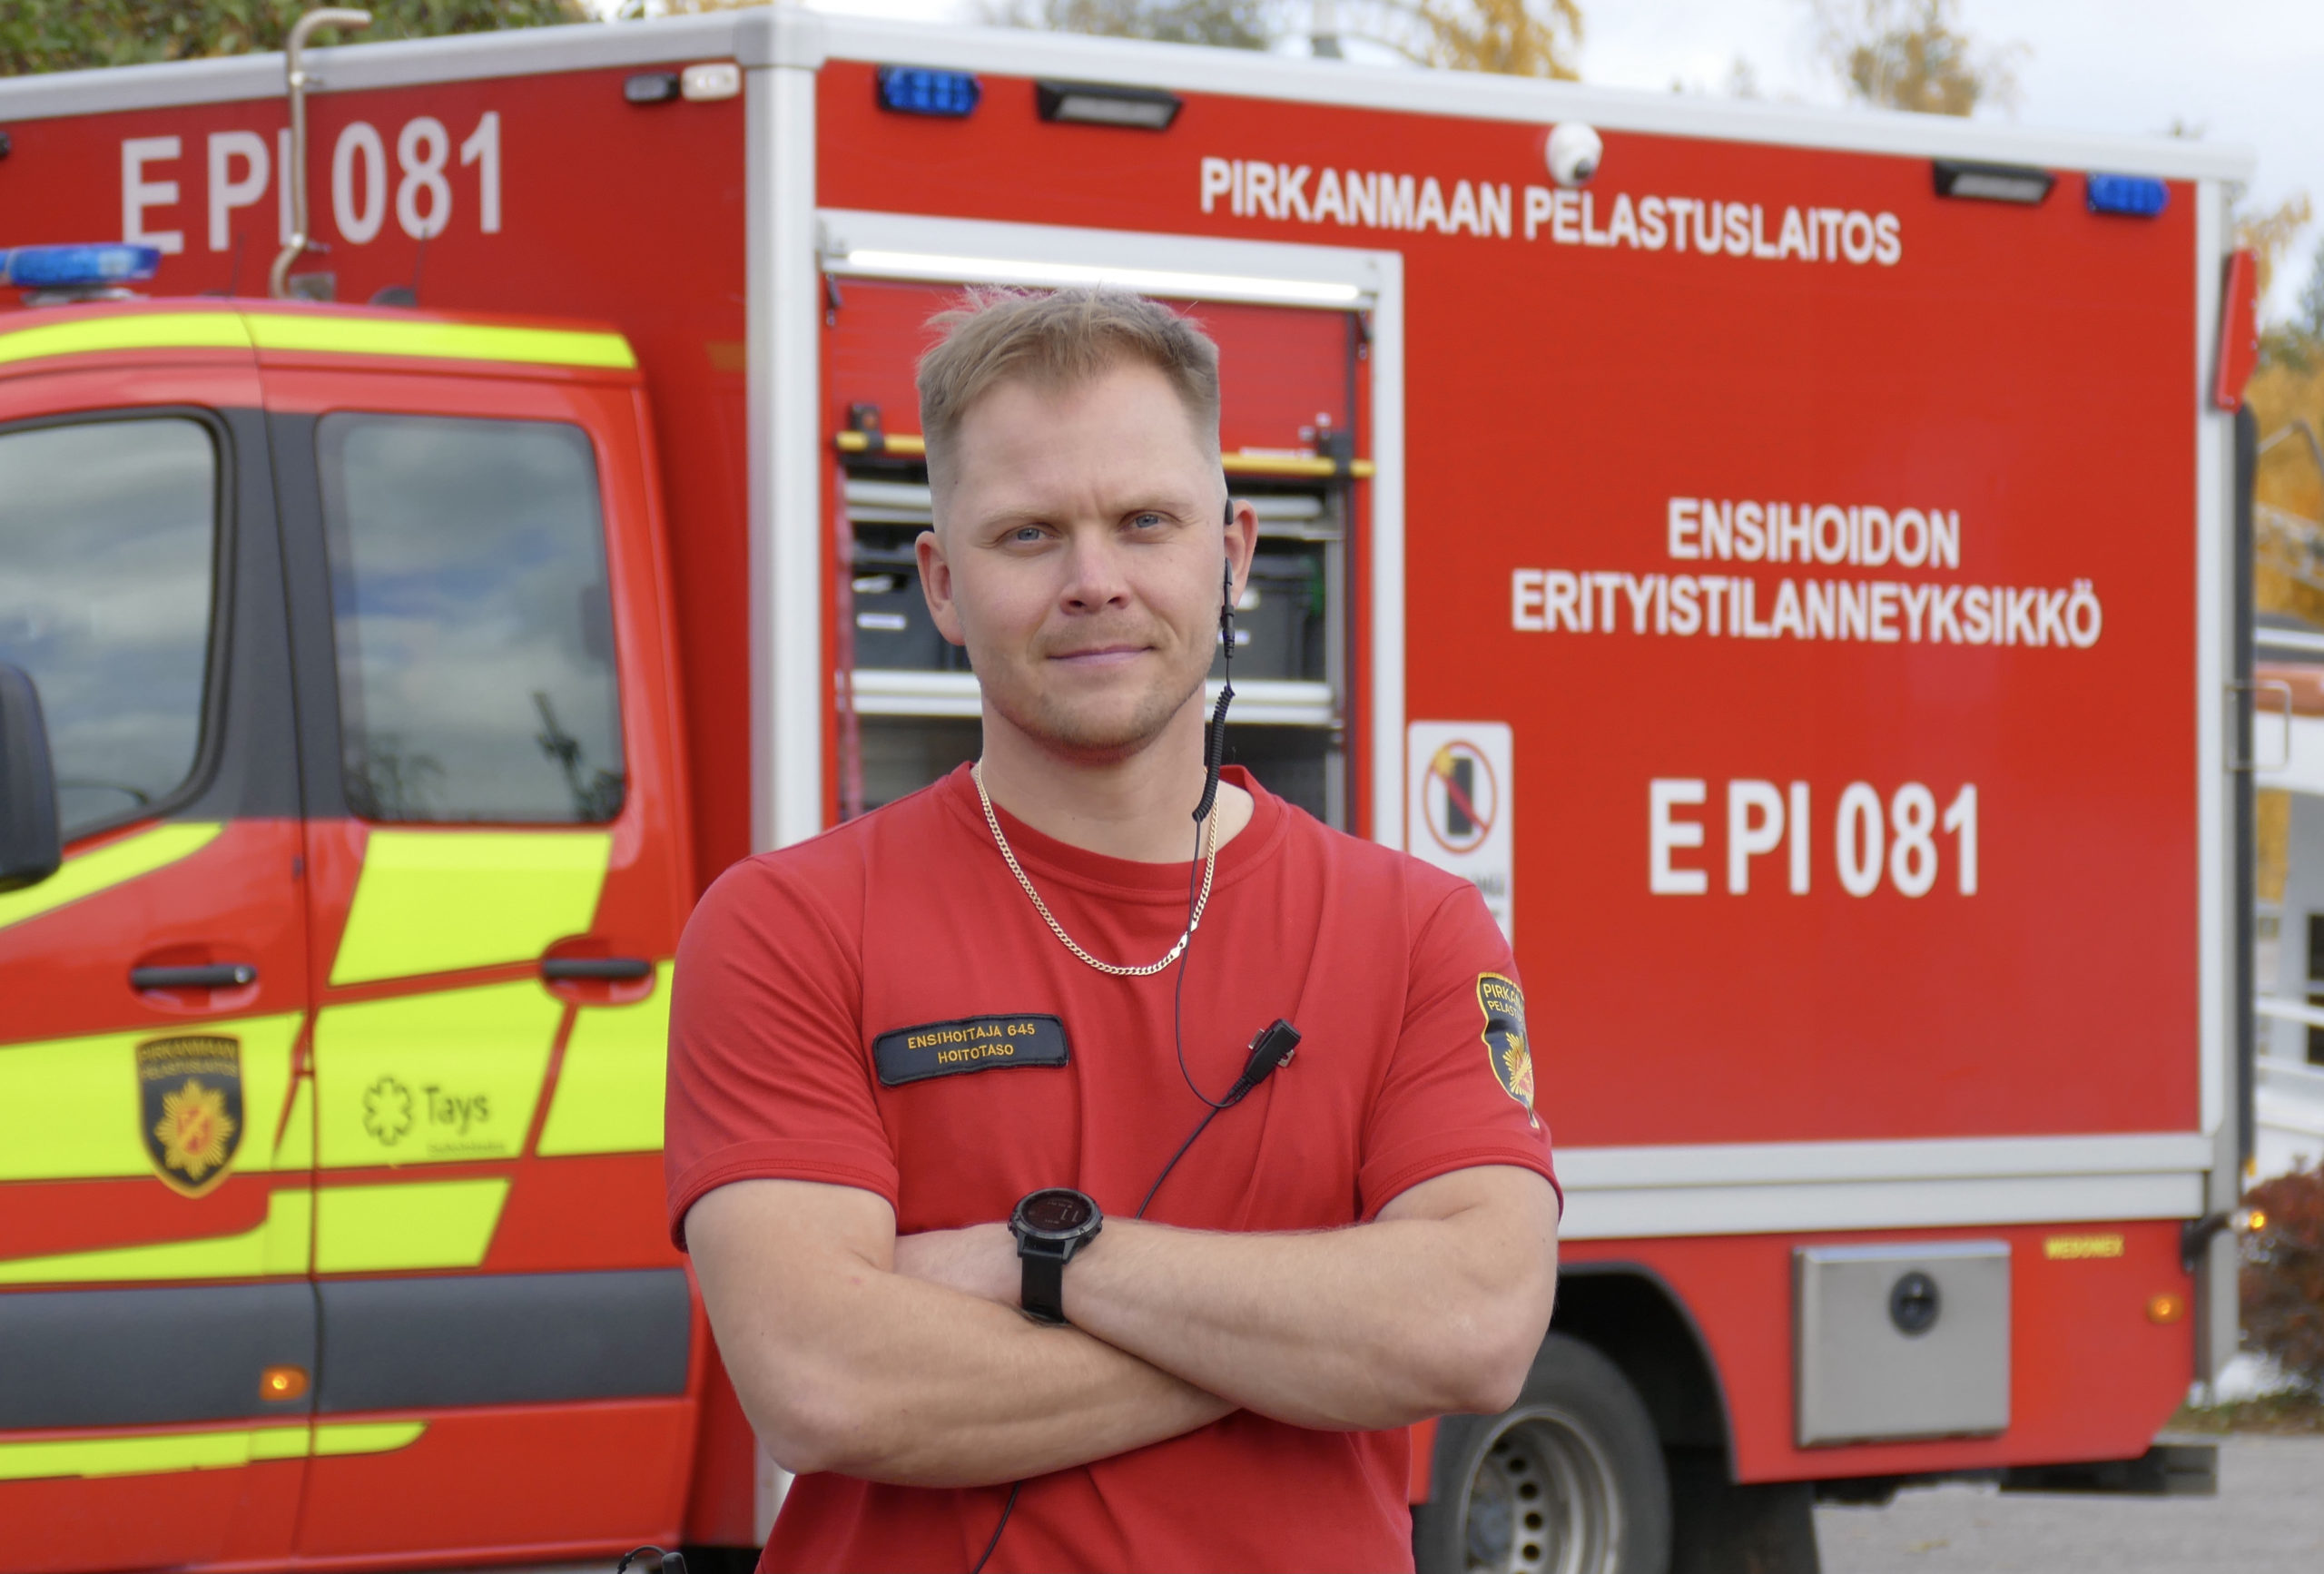 Ensihoitaja Sami-Pekka Korpela on yksi Pirkanmaan erityistilanneyksikössä (EPI 081) työskentelevistä ensihoitajista. 